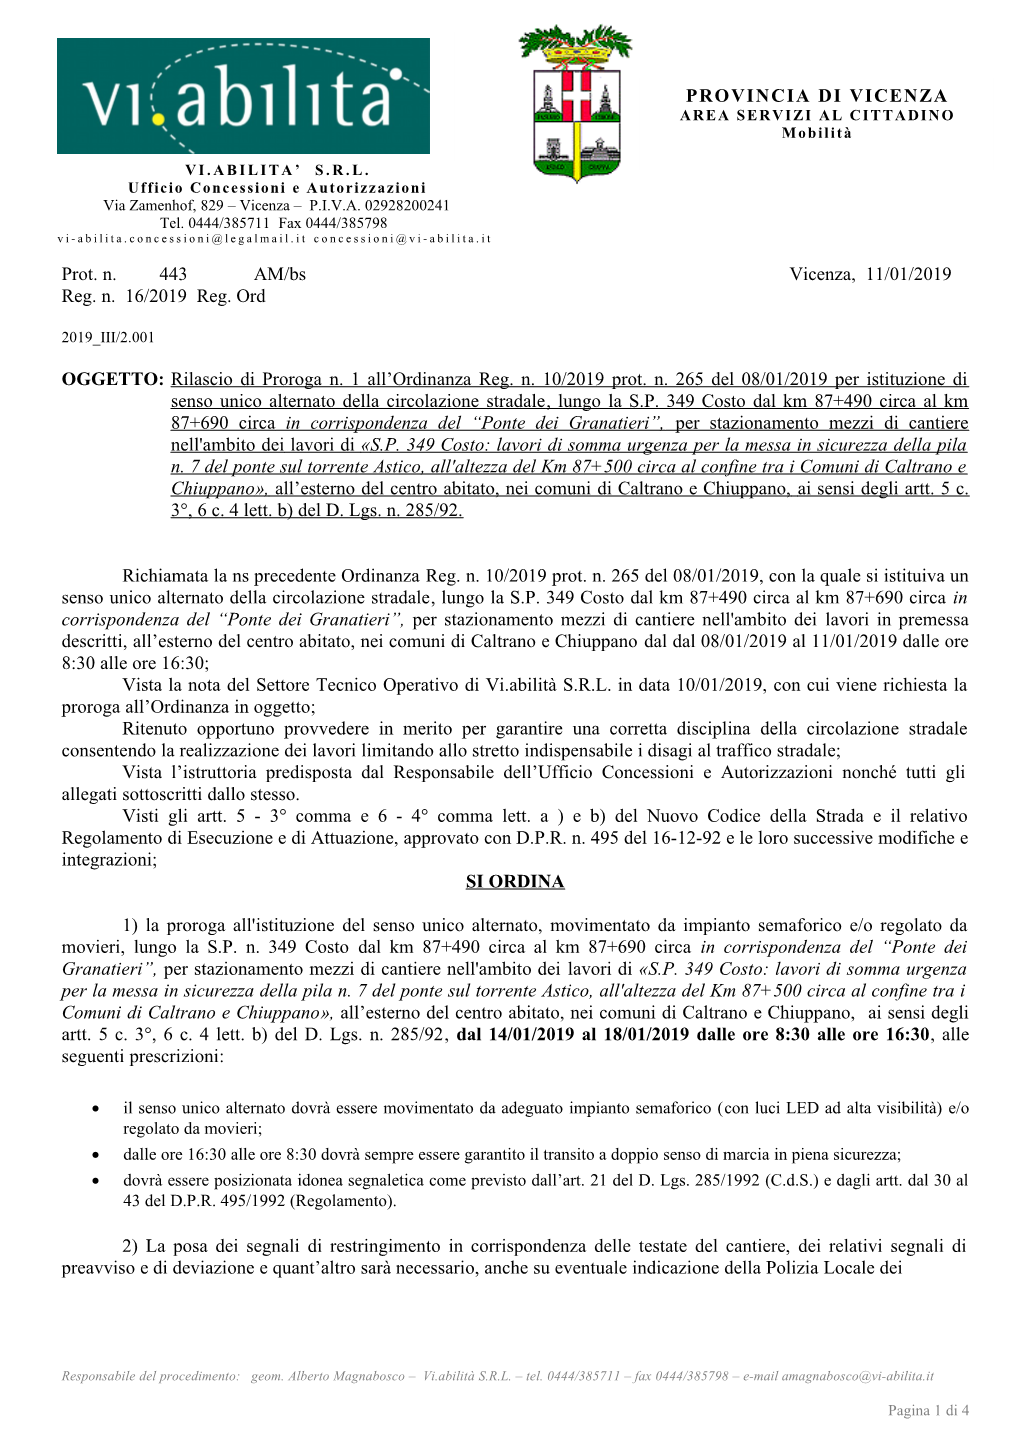 PROVINCIA DI VICENZA Prot. N. 443 AM/Bs Vicenza, 11/01/2019 Reg. N